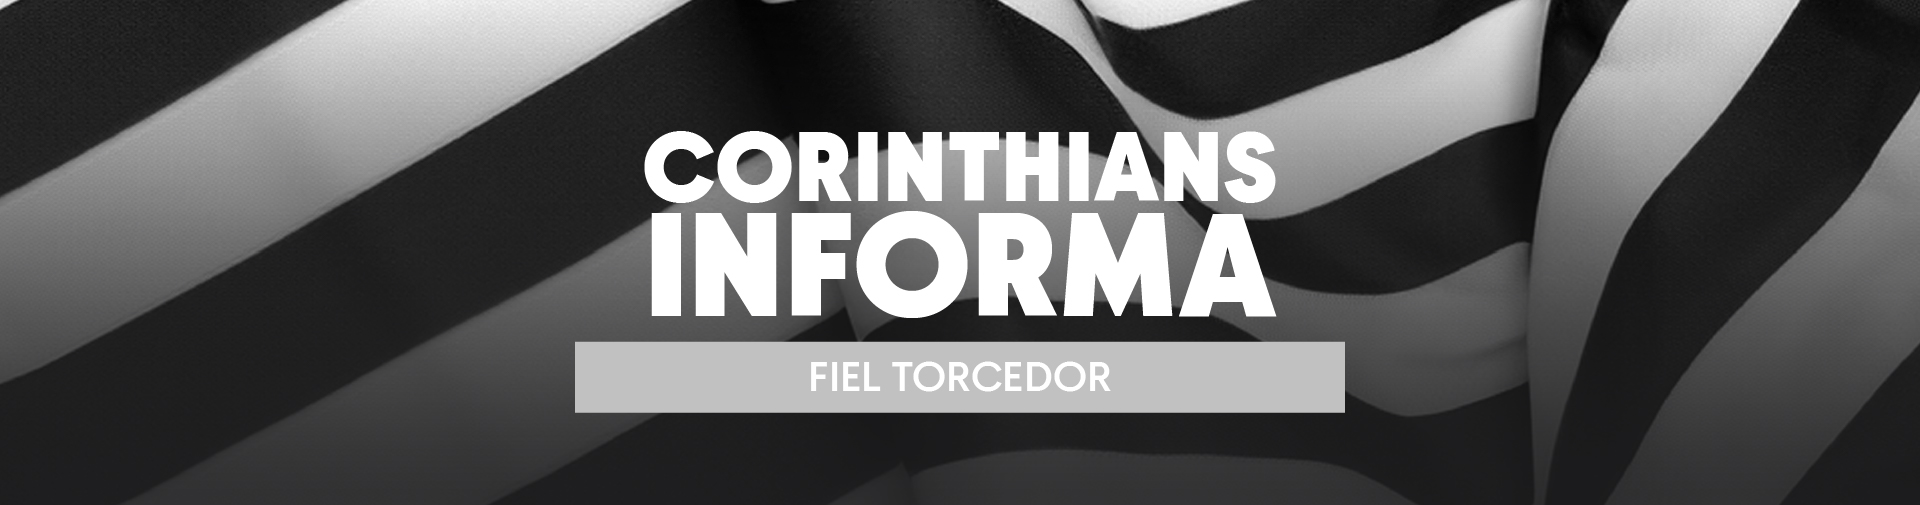 Corinthians Informa: canais oficiais de venda de ingressos